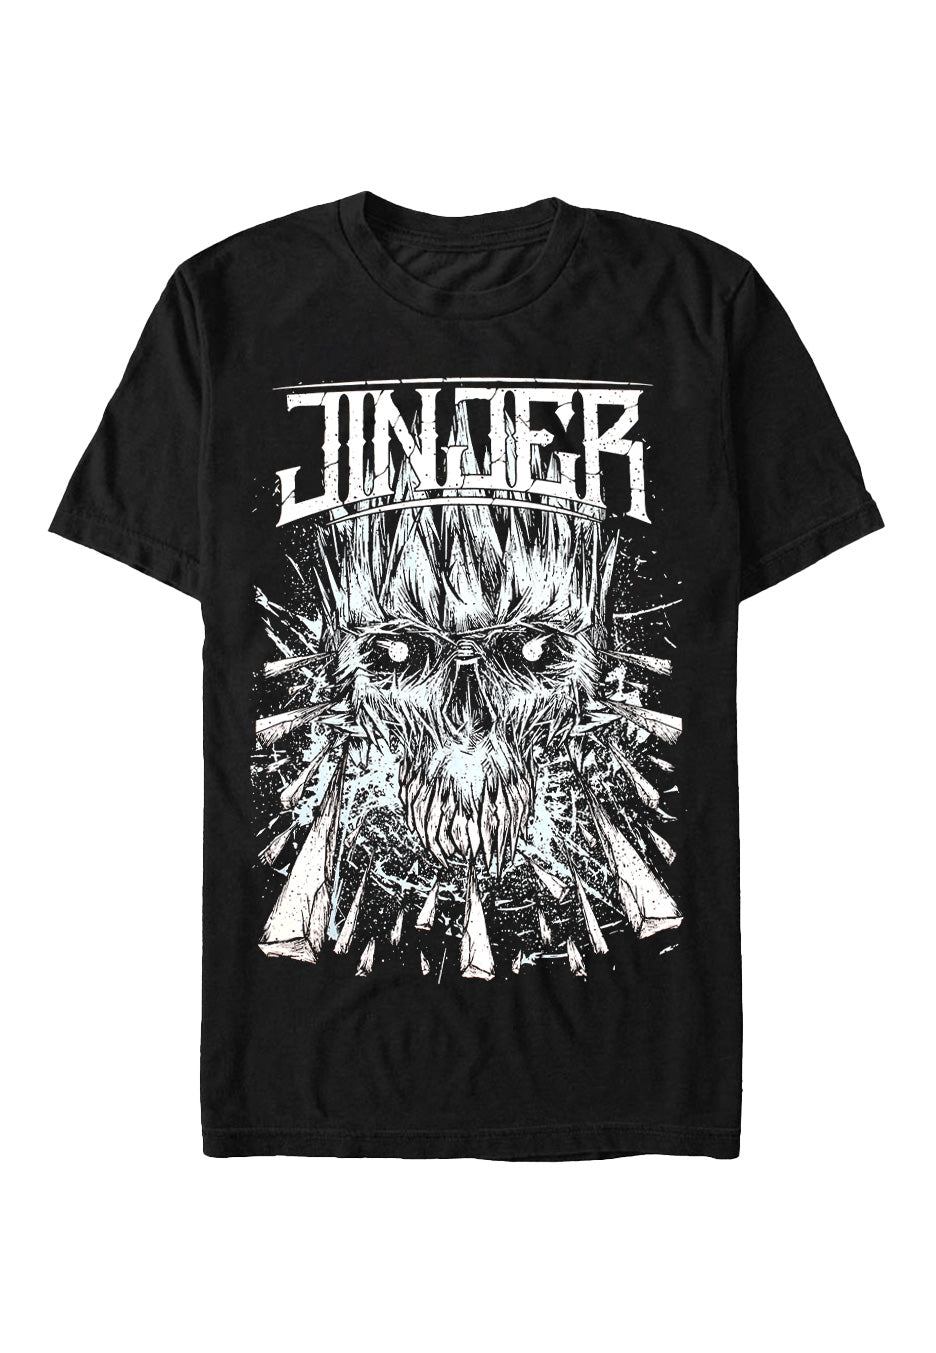 Jinjer - Breathe In - T-Shirt